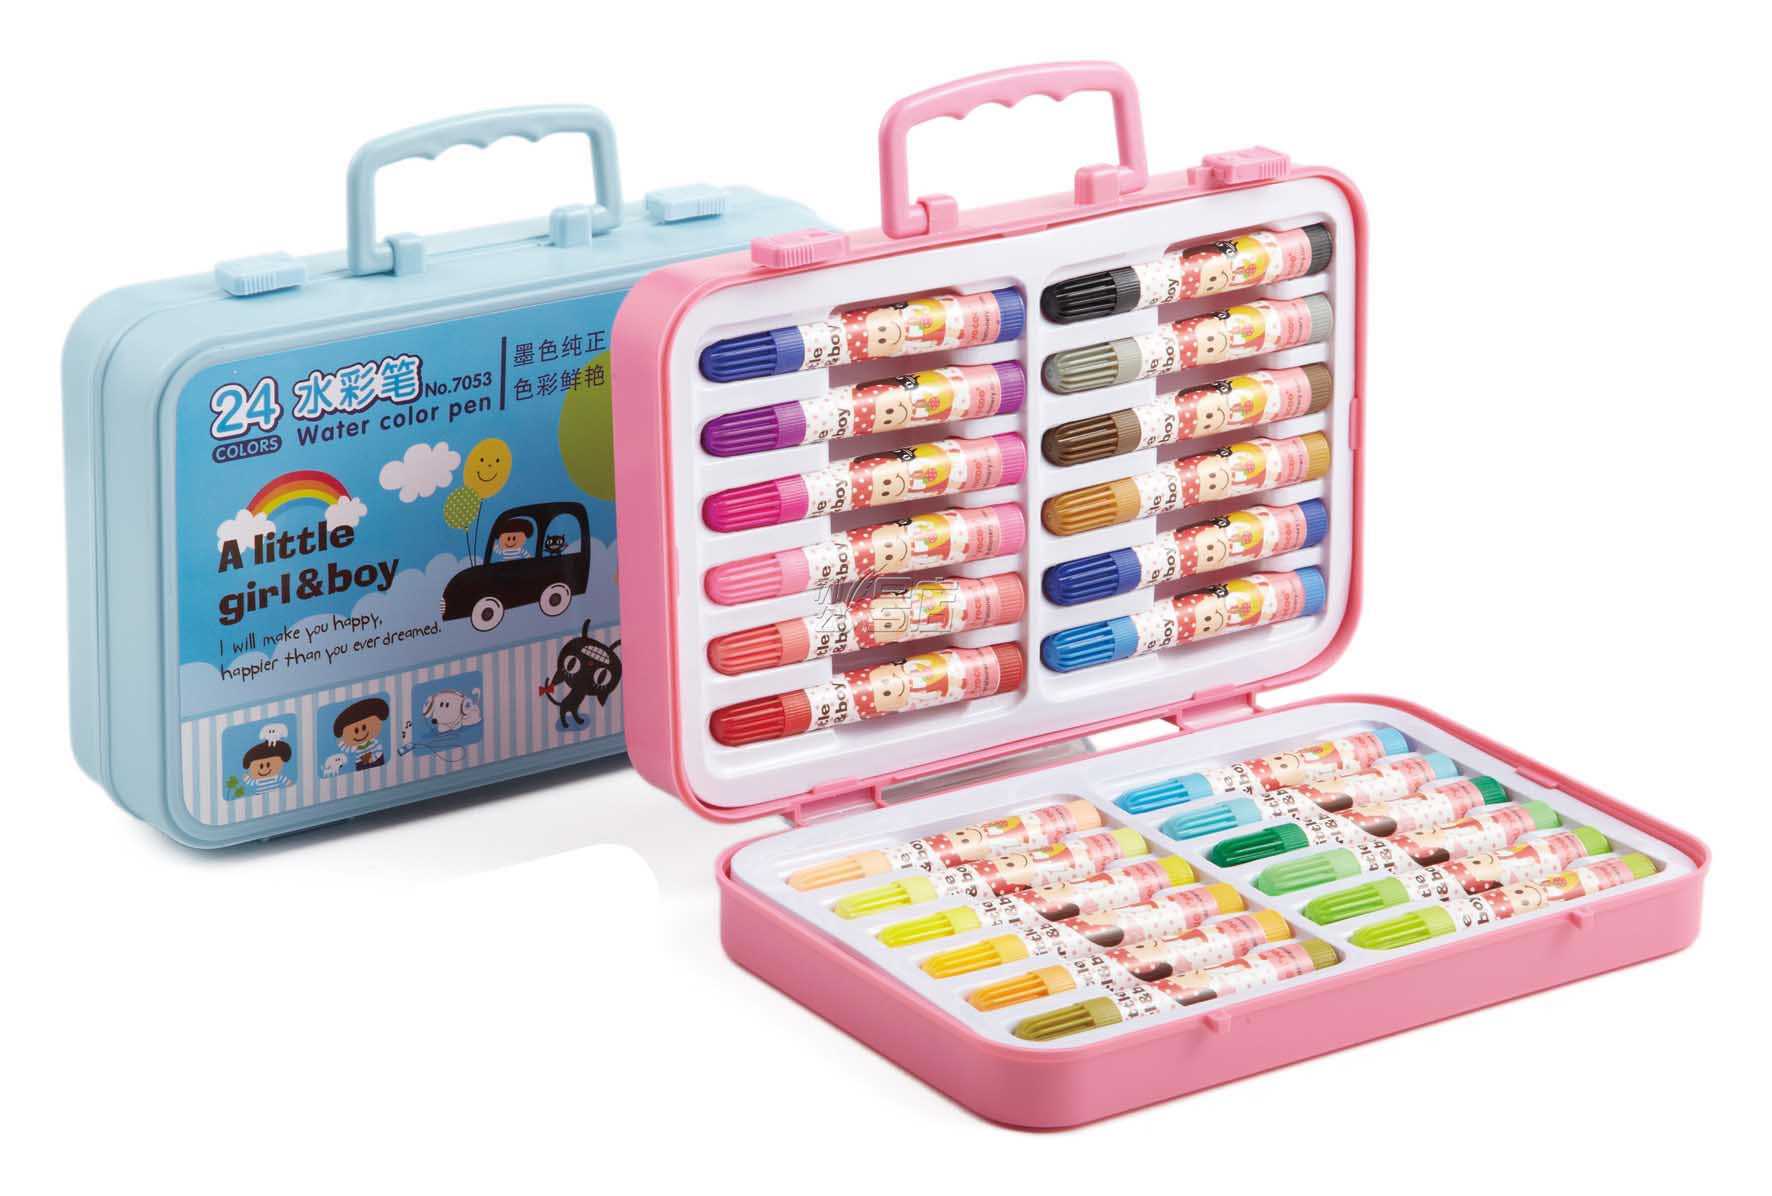 得力7053水彩笔 彩色水笔 儿童绘画笔水性水彩笔 24色盒装水彩笔